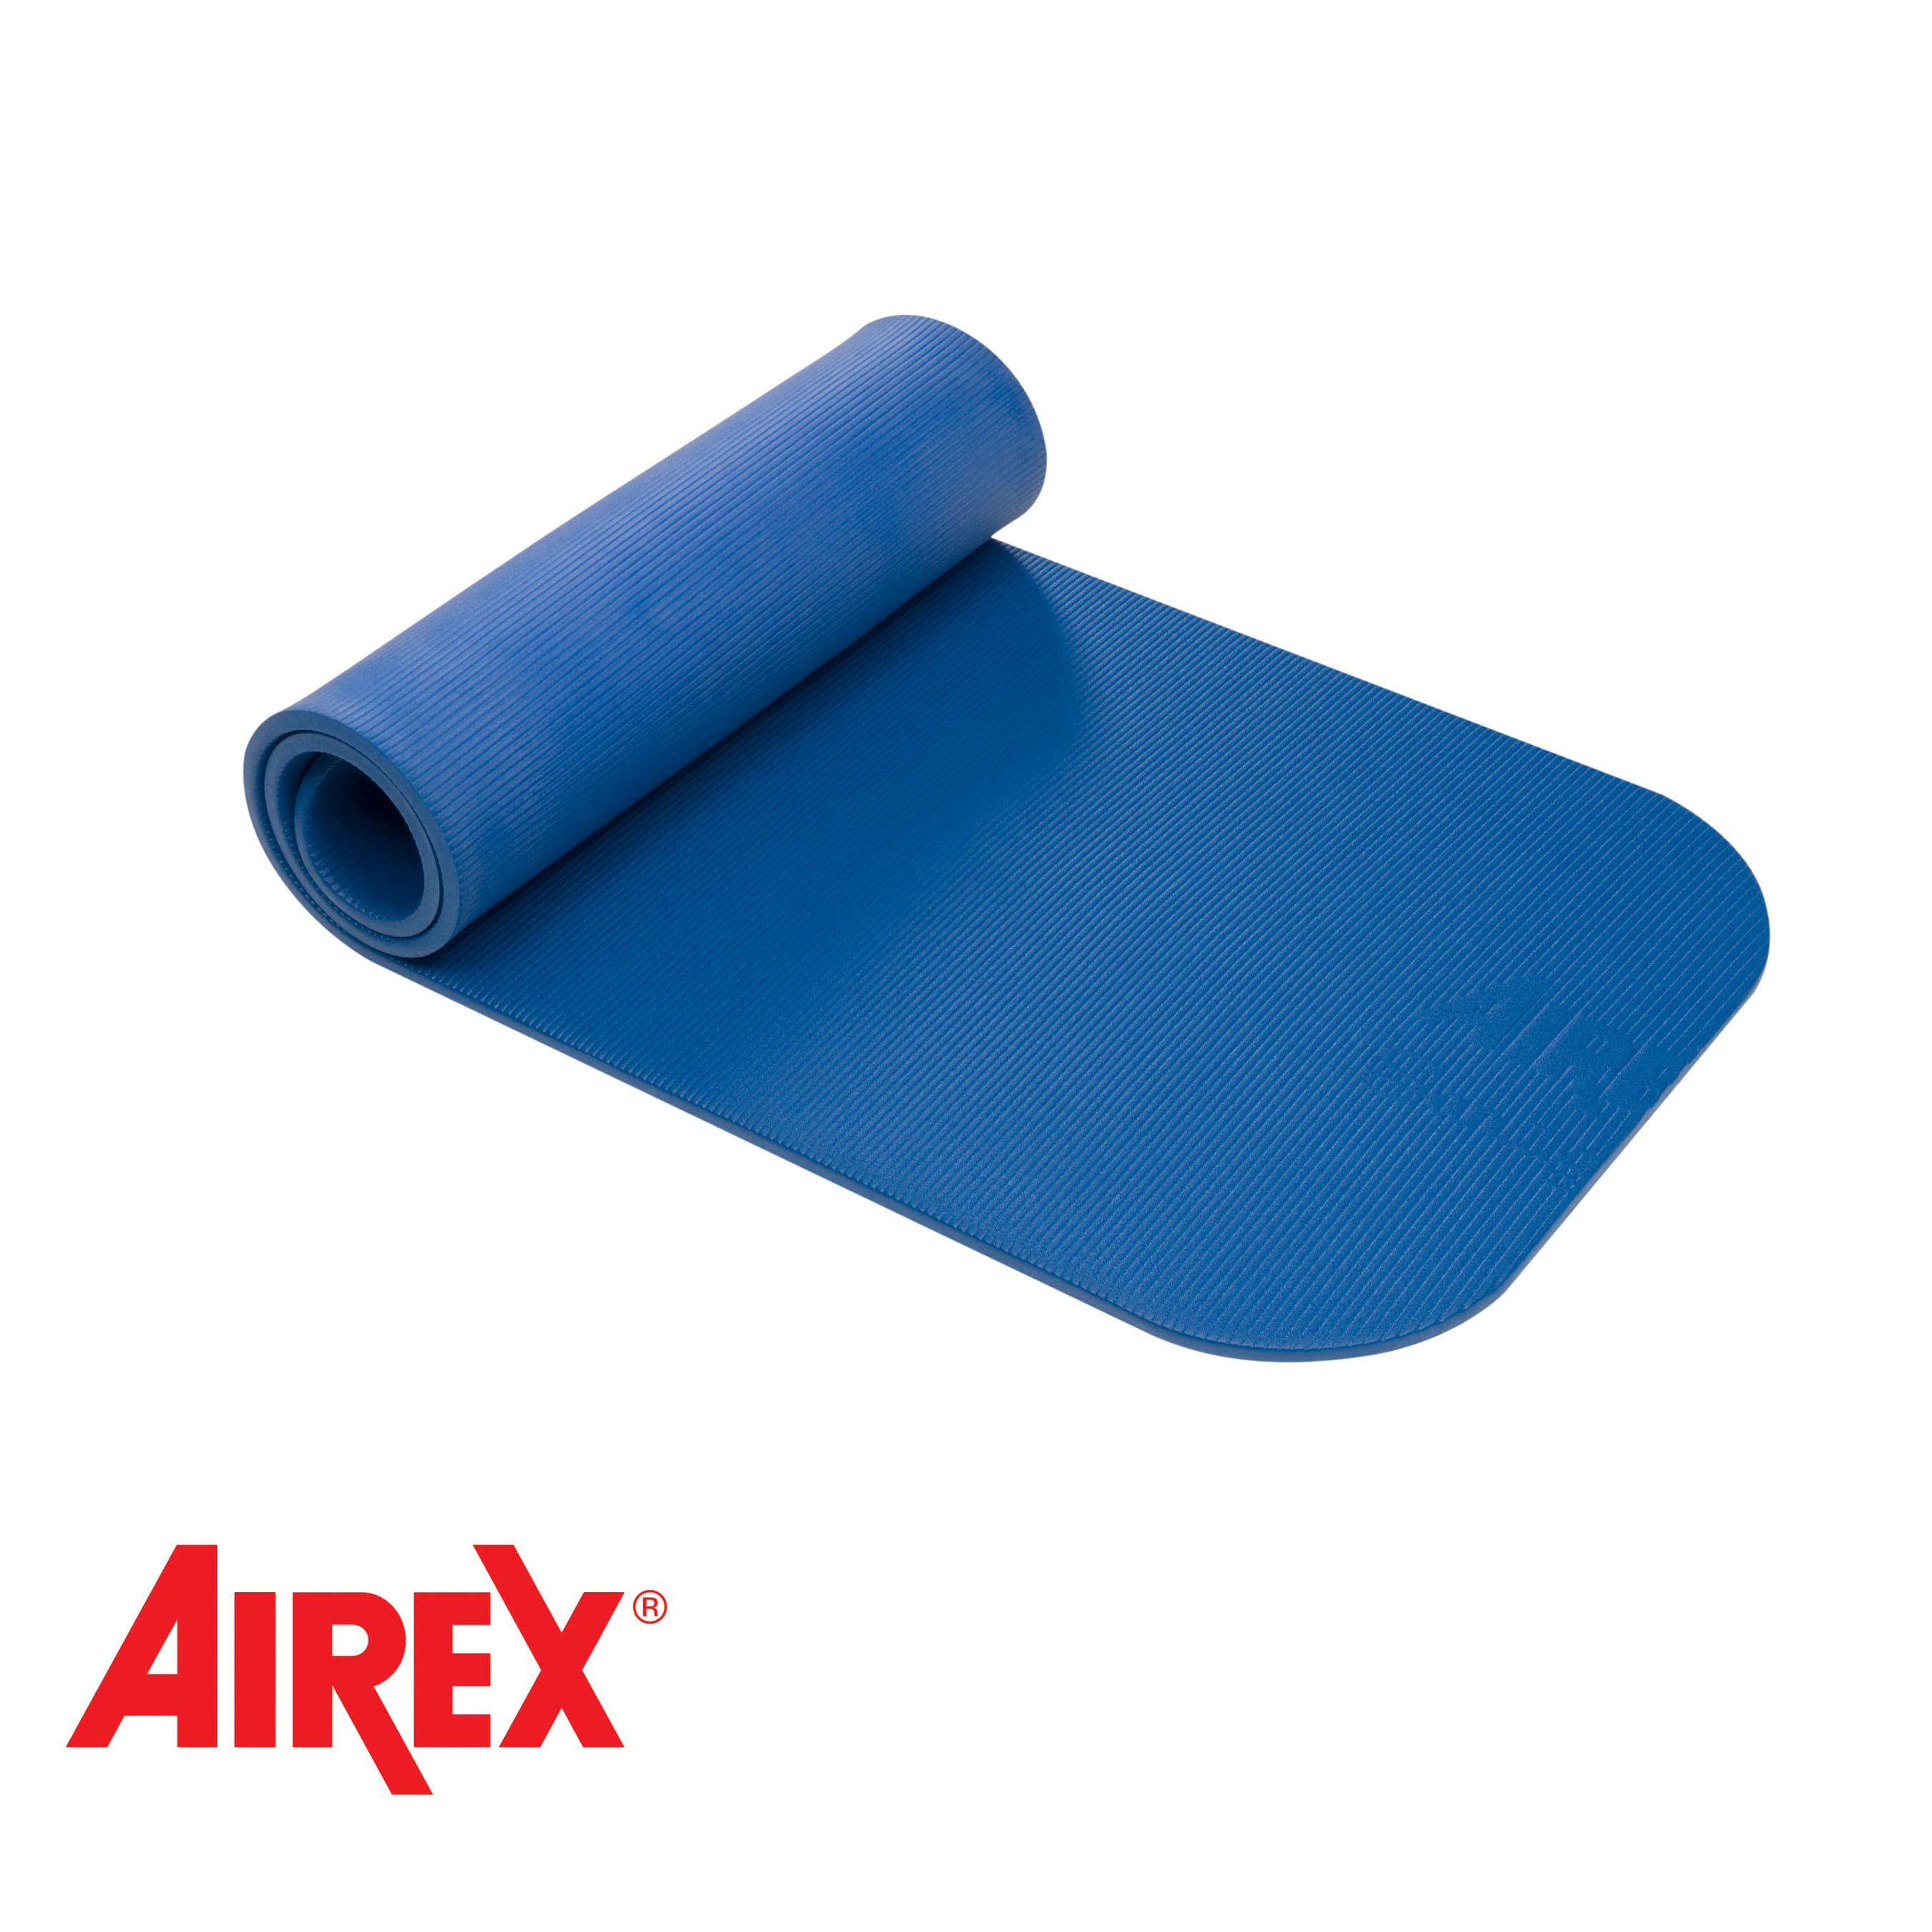 Airex® Coronalla 185 Mat Blue